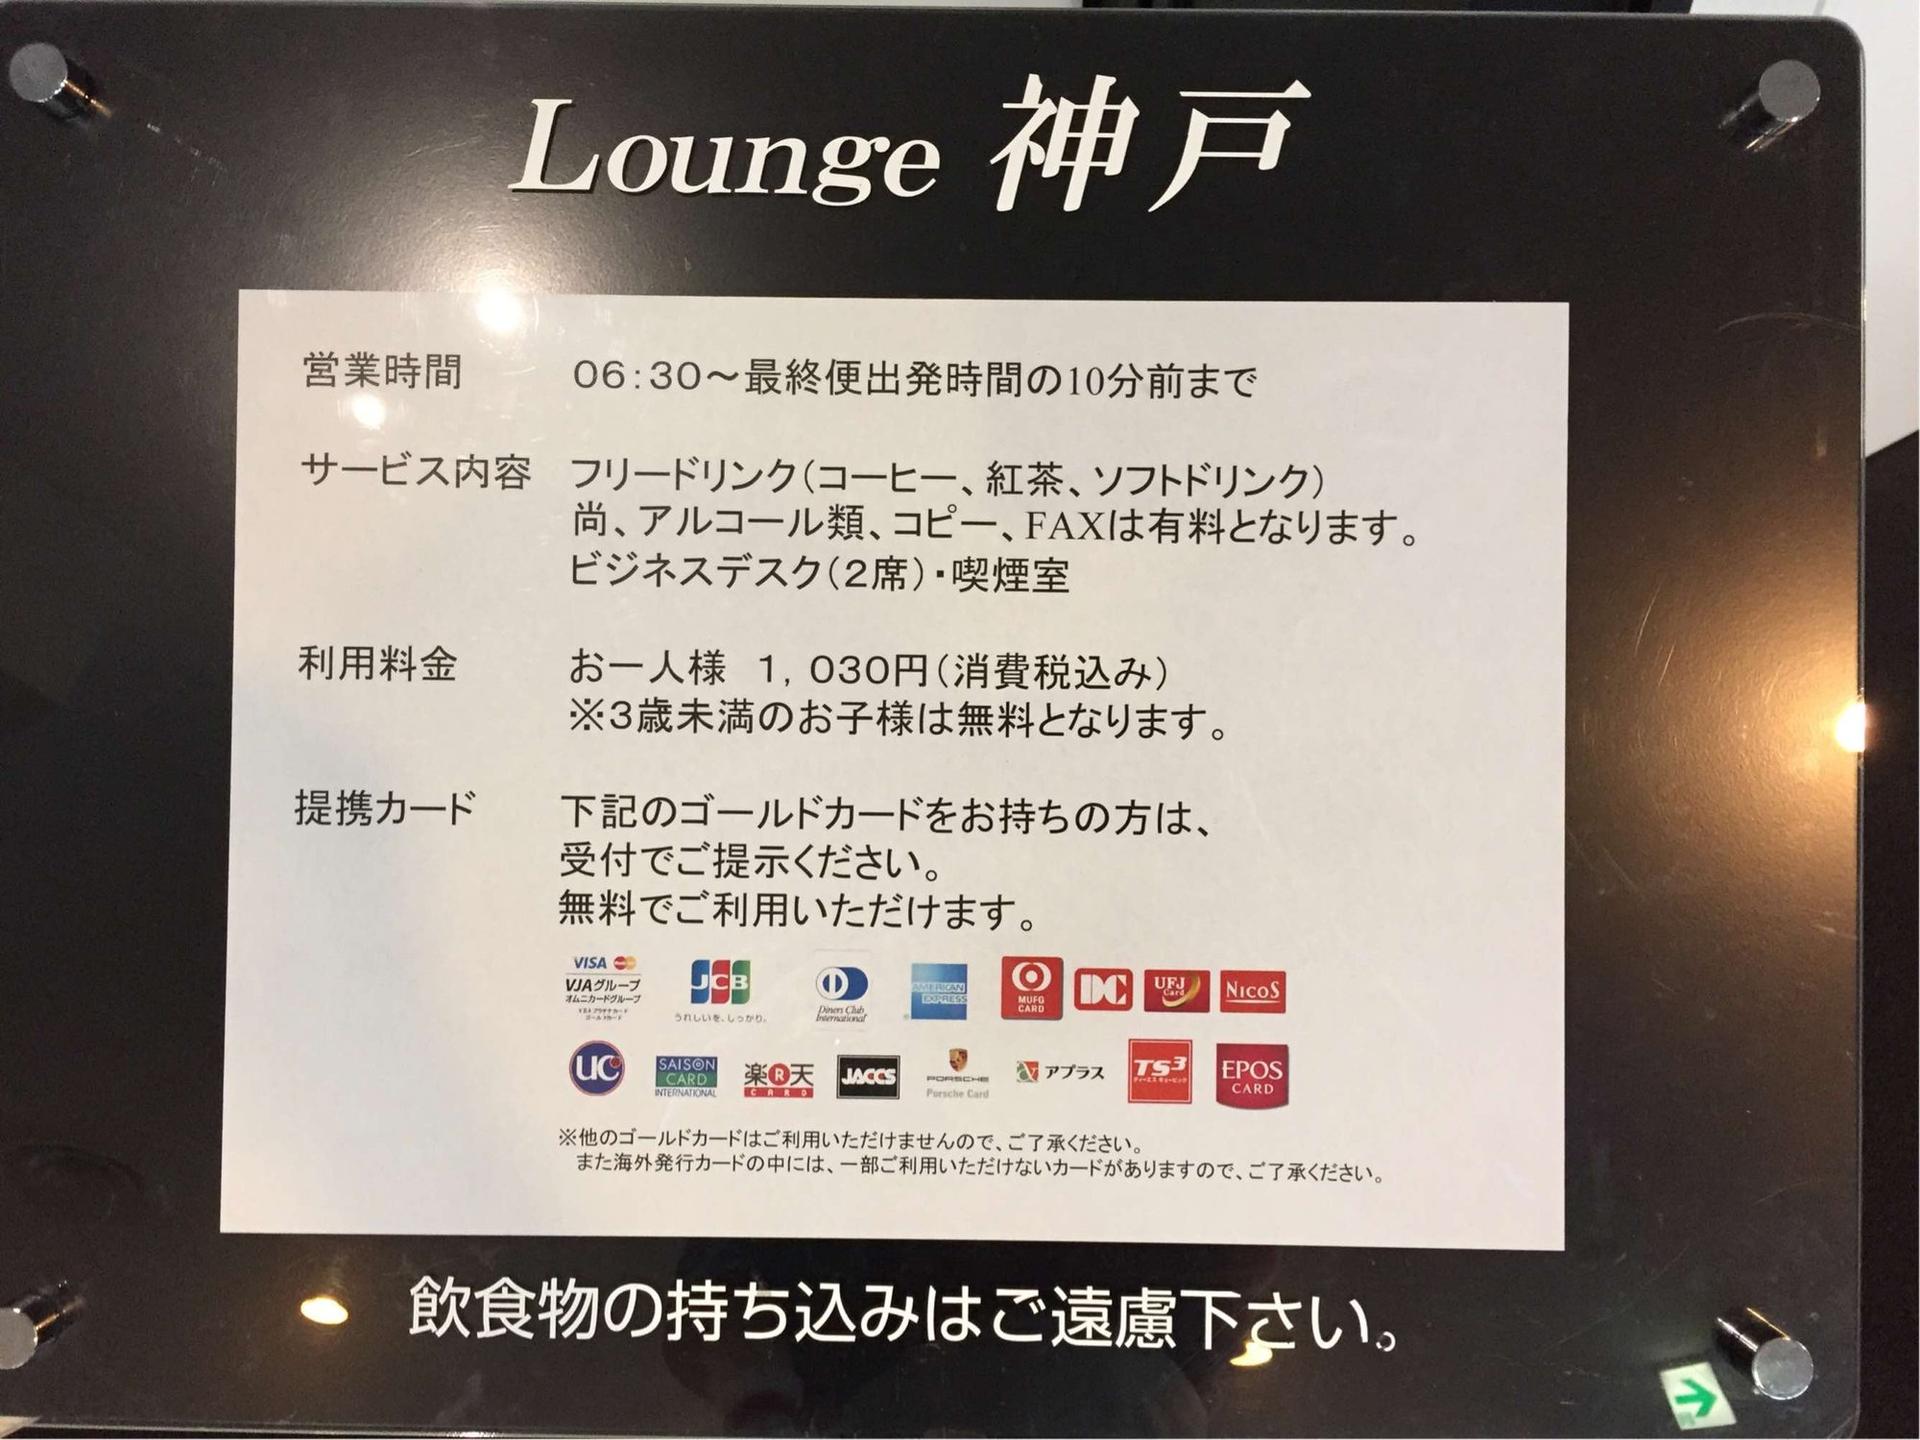 Lounge Kobe image 6 of 6